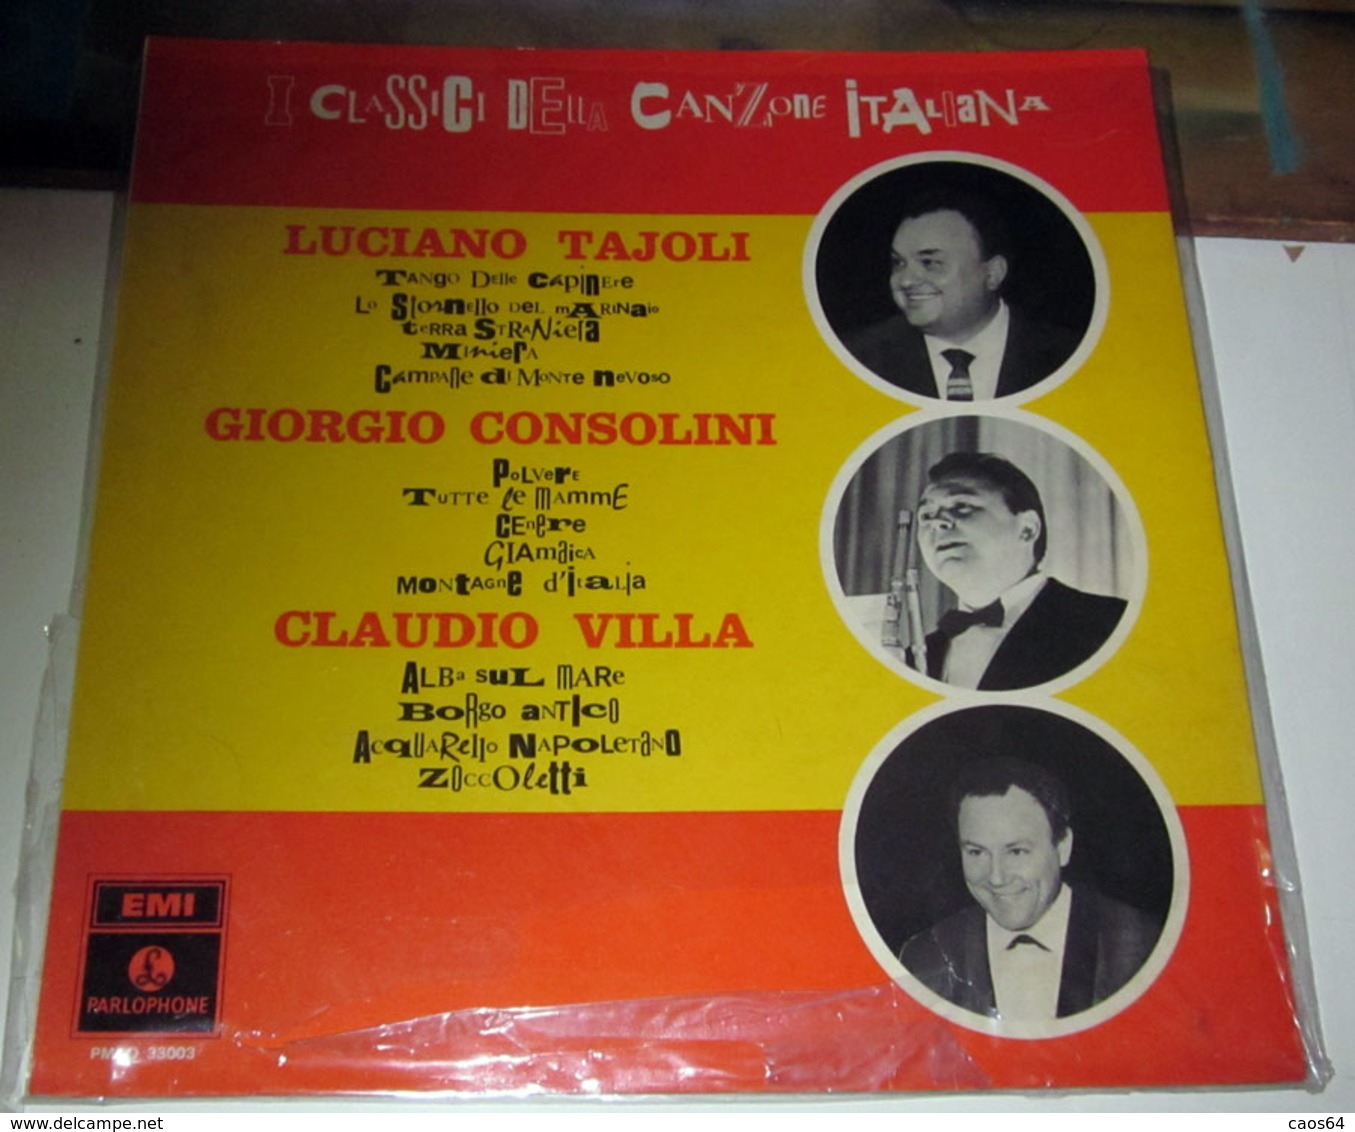 LUCIANO TAJOLI GIORGIO CONSOLINI CLAUDIO VILLA I CLASSICI DELLA CANZONE ITALIANA - Sonstige - Italienische Musik